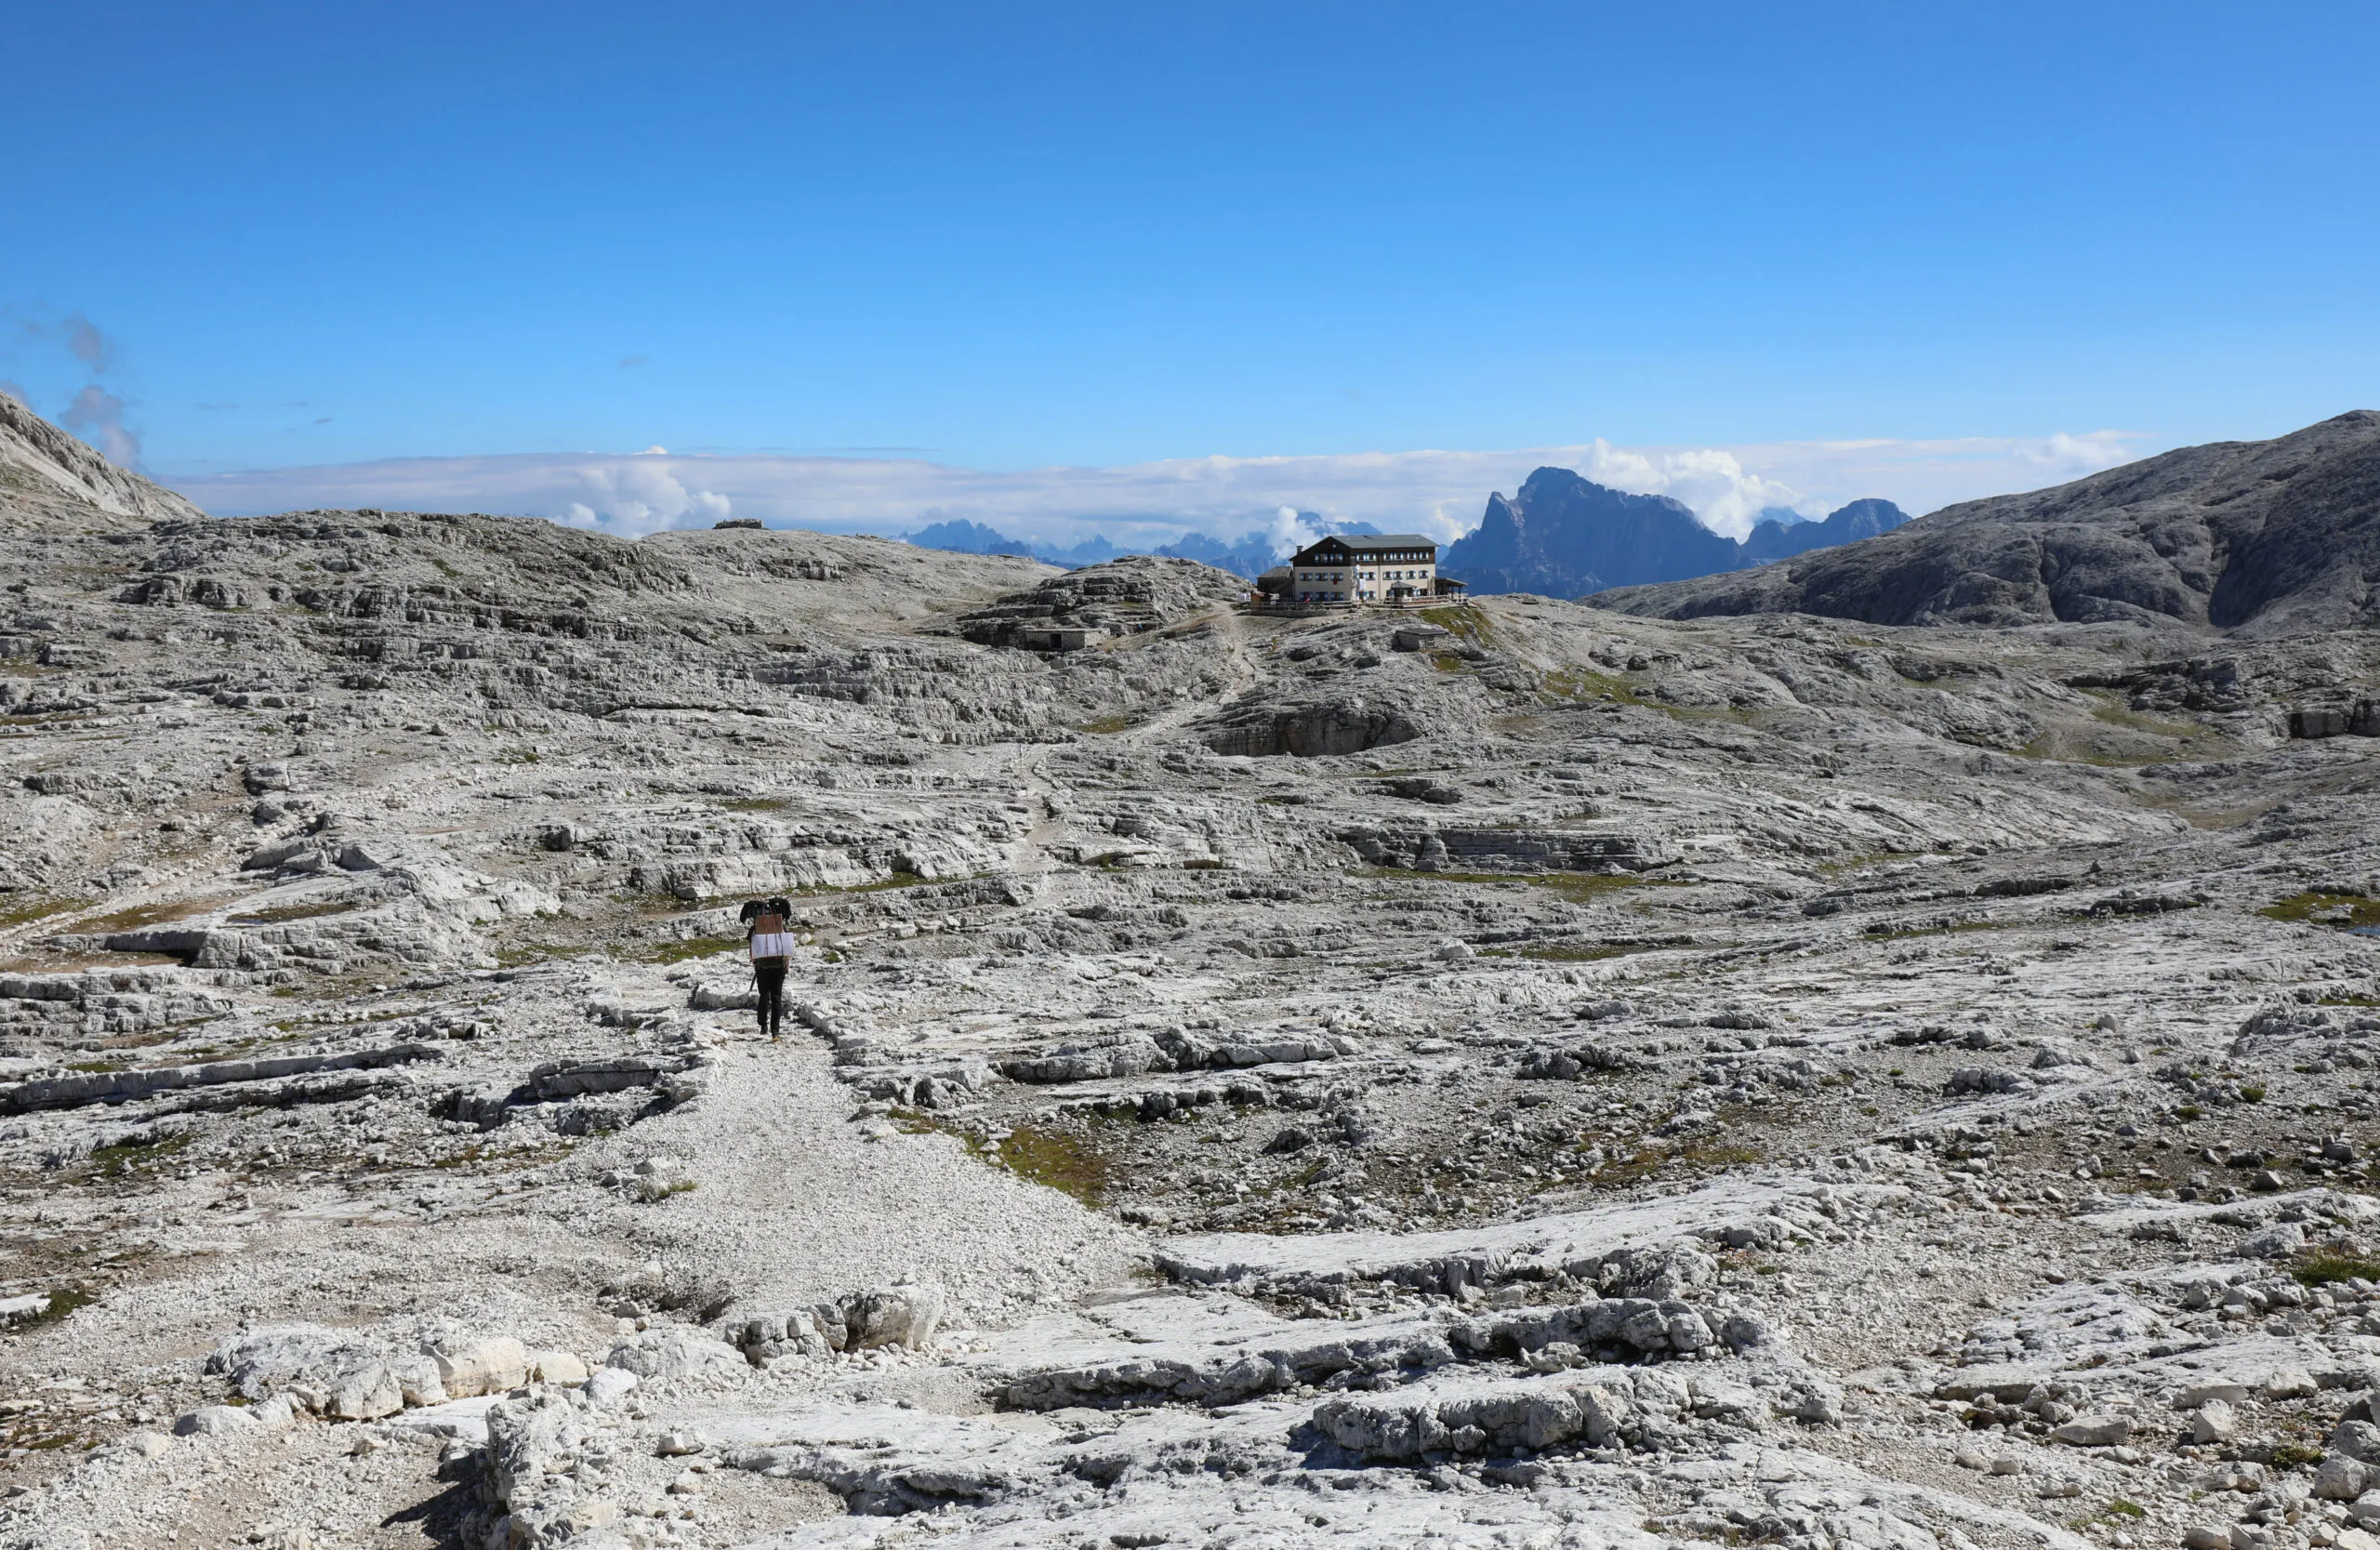 trostloses, fast mondähnliches panorama der europäischen alpen im sommer und ein gütertransporter auf einem steinigen weg